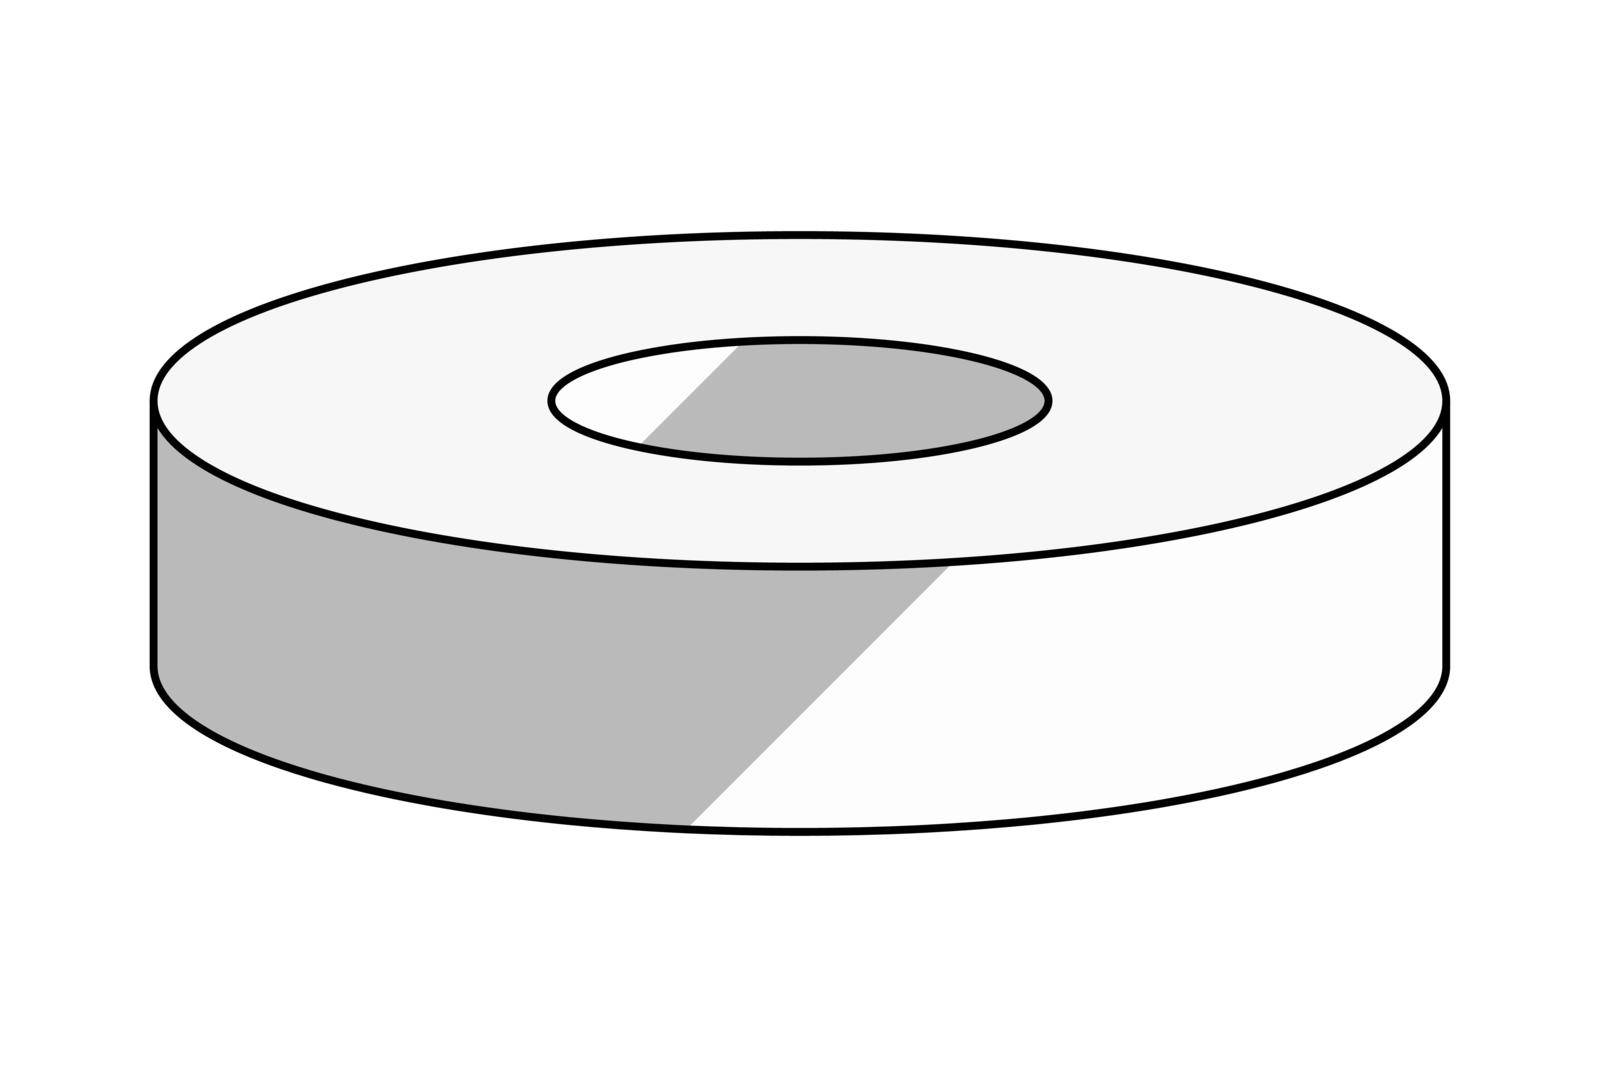 Finger tape pictogram vector illustration.